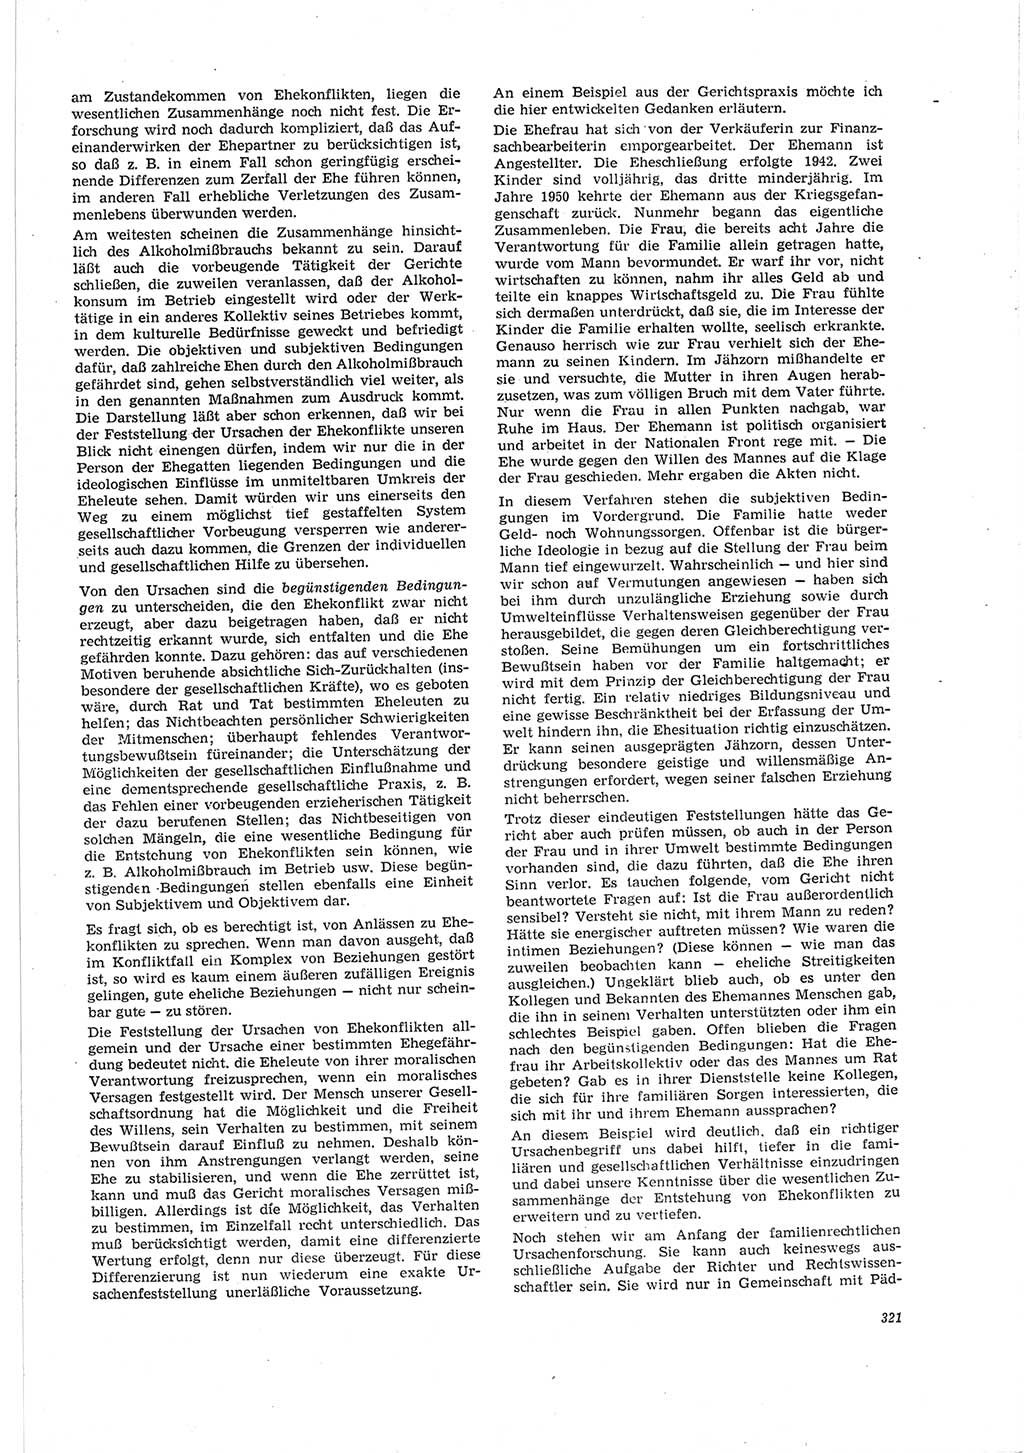 Neue Justiz (NJ), Zeitschrift für Recht und Rechtswissenschaft [Deutsche Demokratische Republik (DDR)], 19. Jahrgang 1965, Seite 321 (NJ DDR 1965, S. 321)